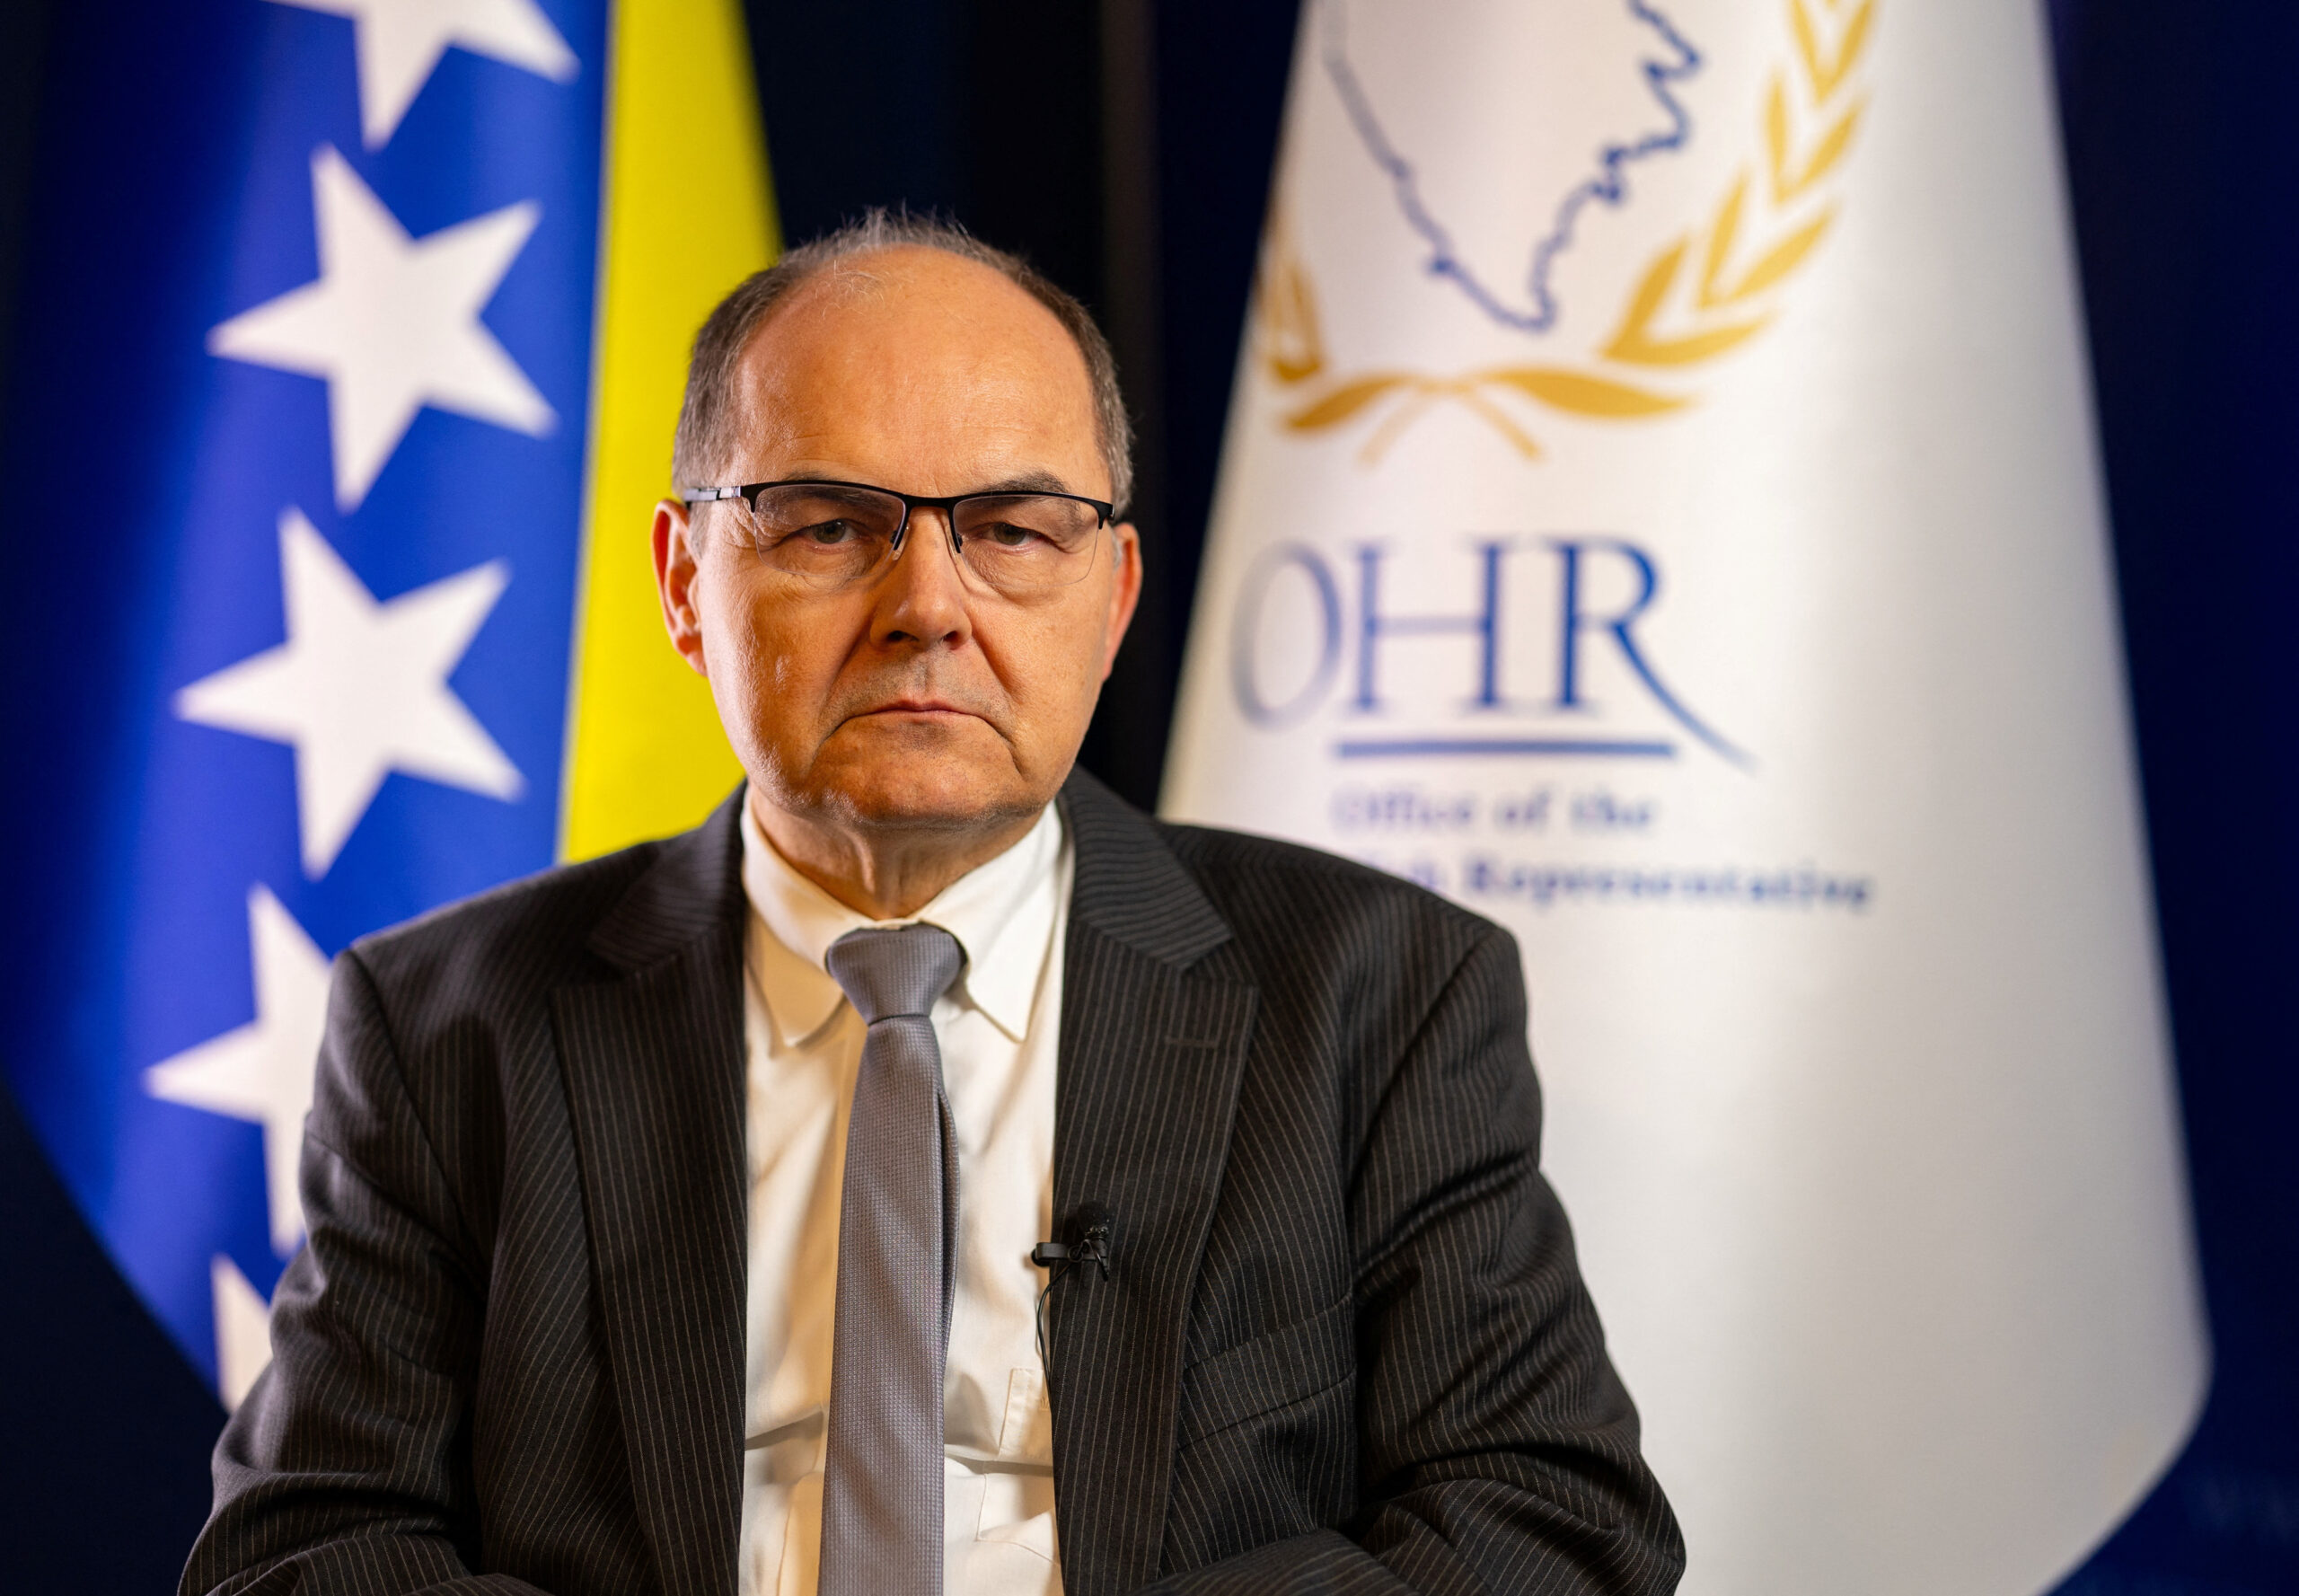 Visoki predstavnik u BiH podnio je još jedno izvješće glavnom tajniku UN-a